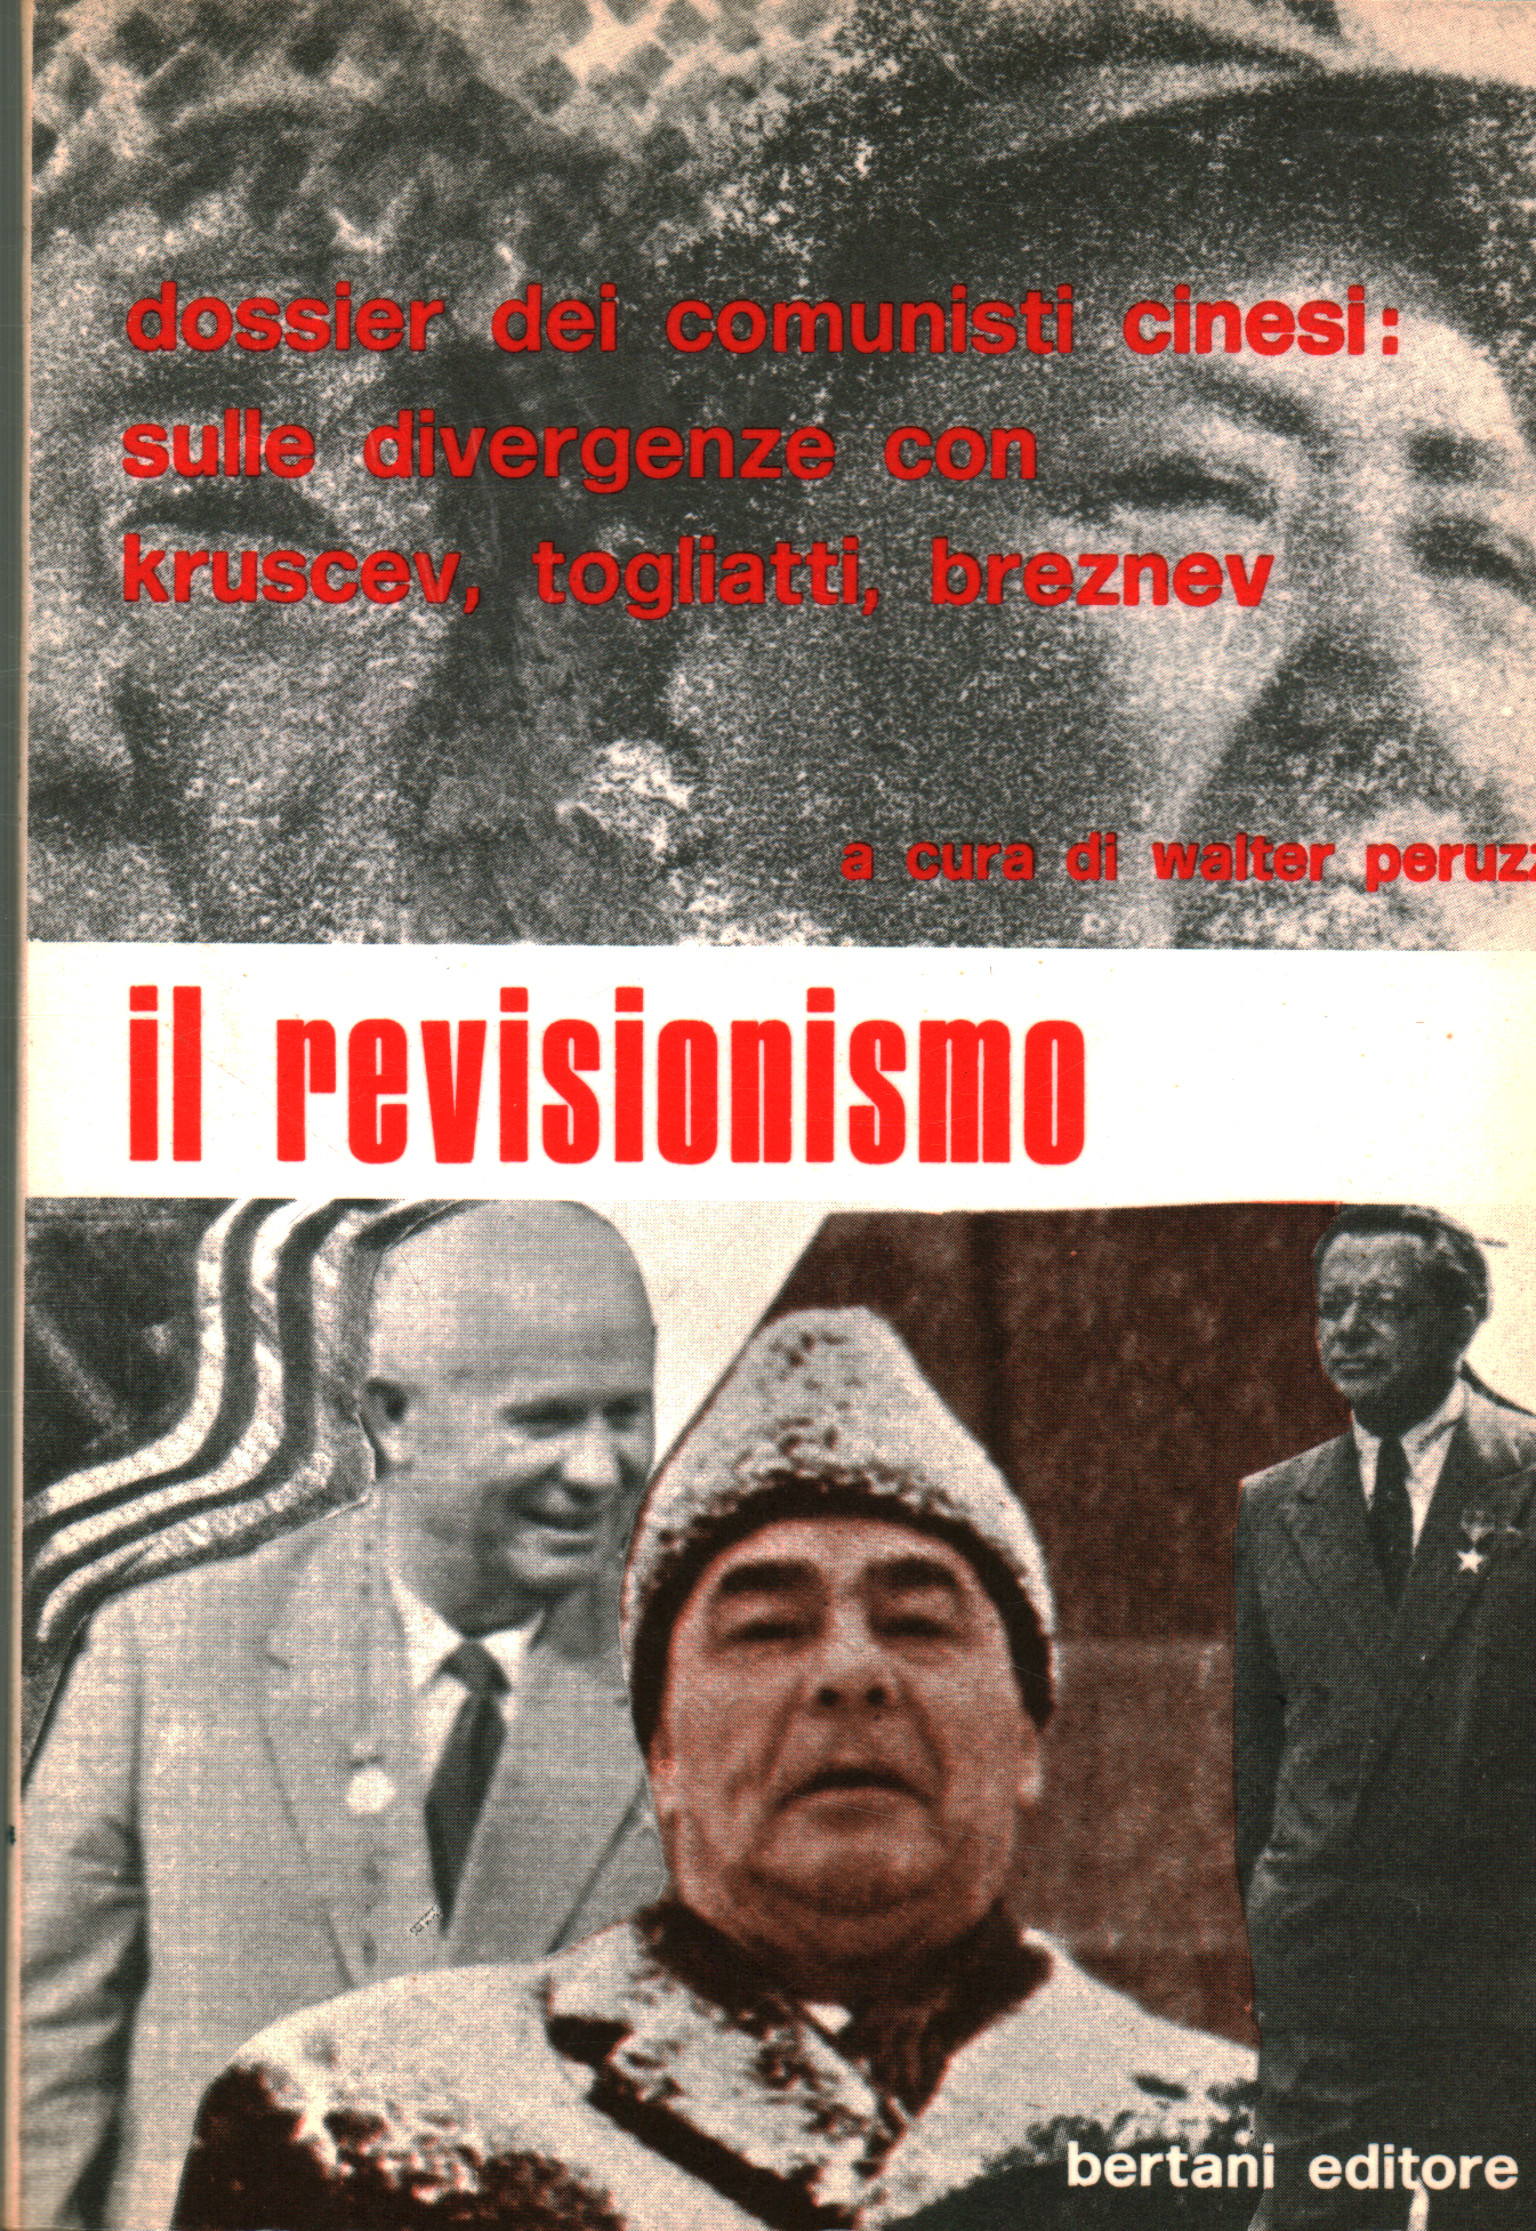 Revisionism, Walter Peruzzi